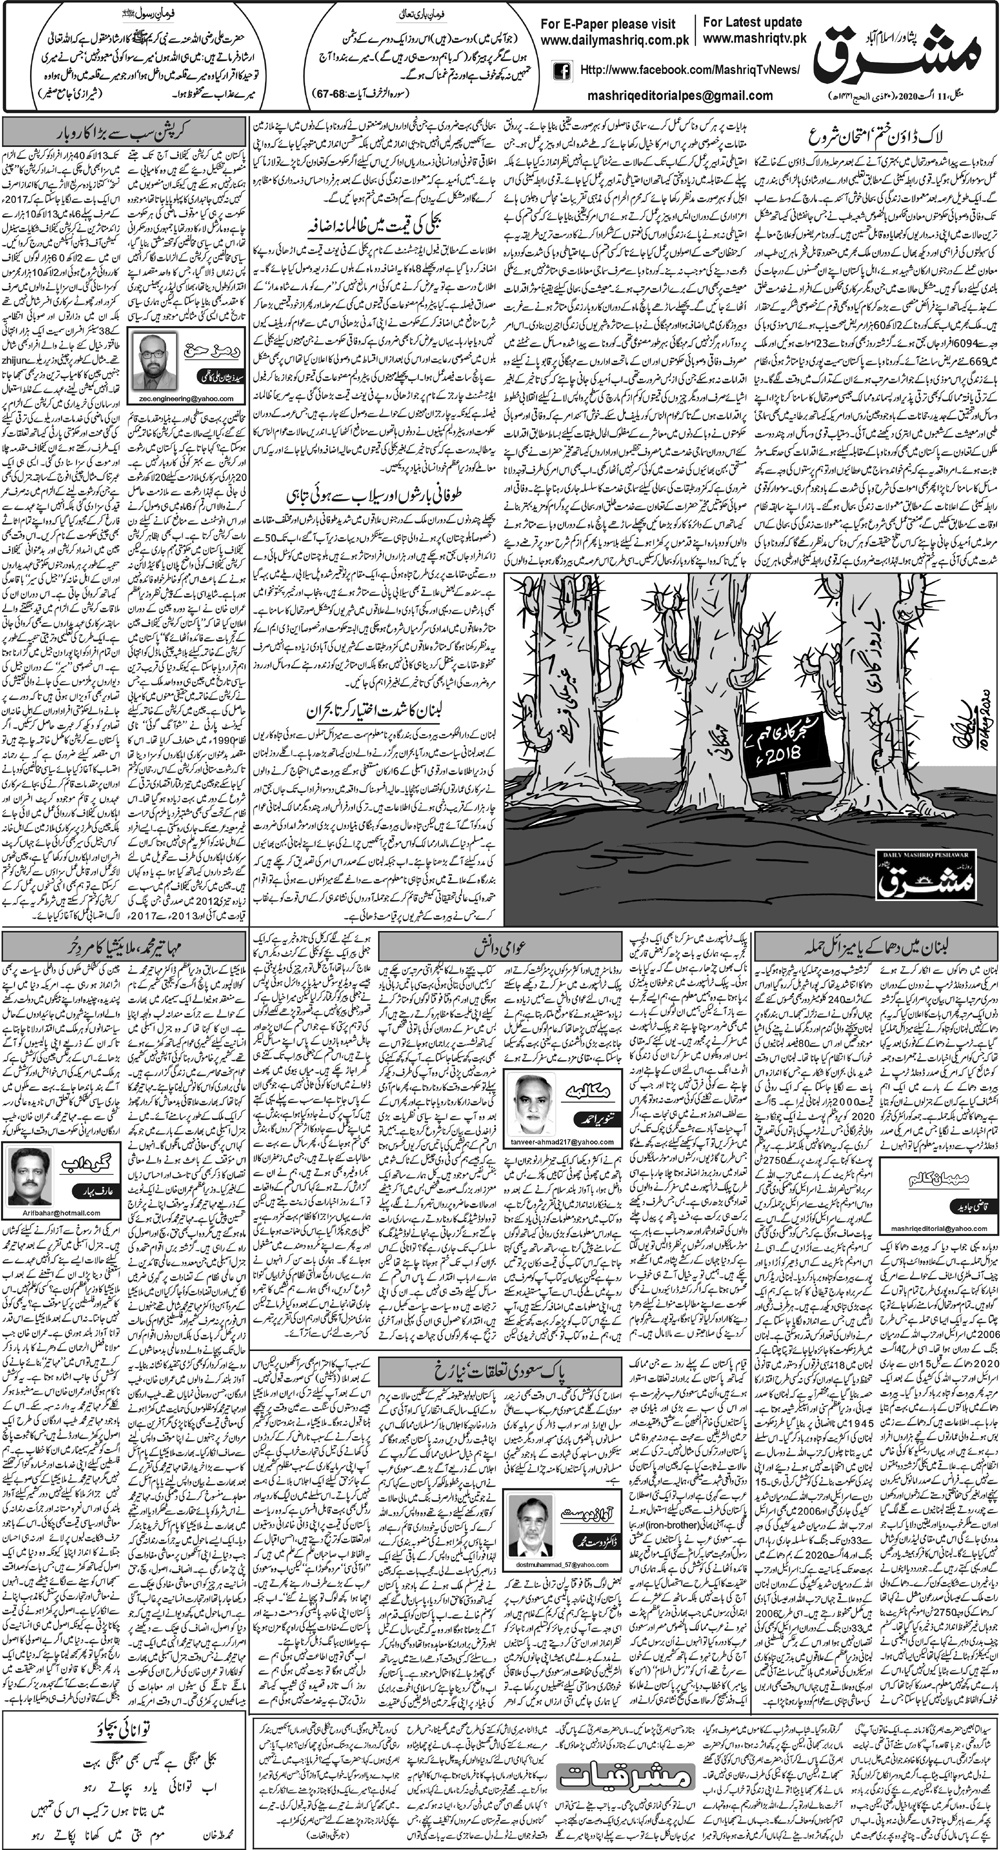 Daily Mashriq Page 1 Date